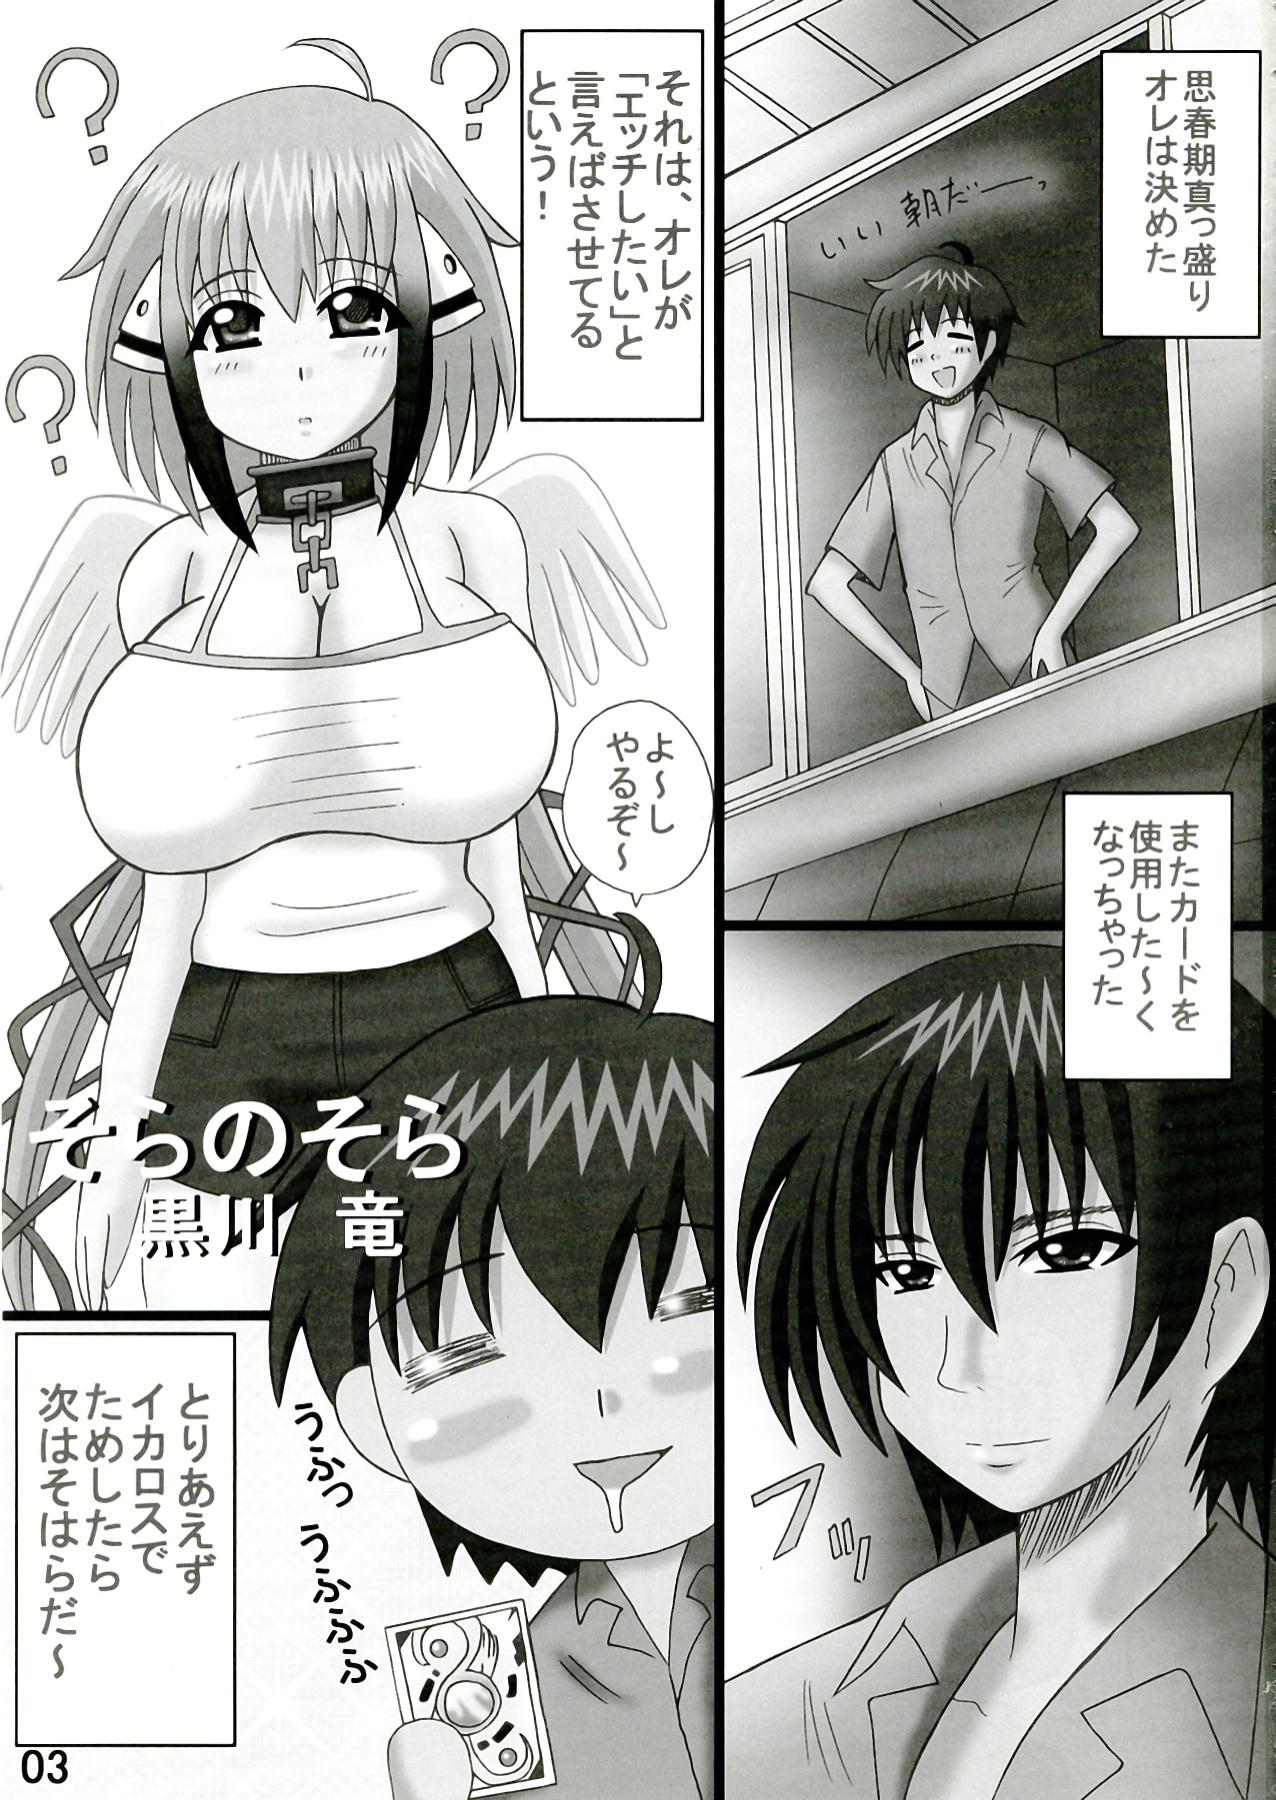 Hard Core Porn Sora no Sora - Sora no otoshimono Gay Friend - Page 3